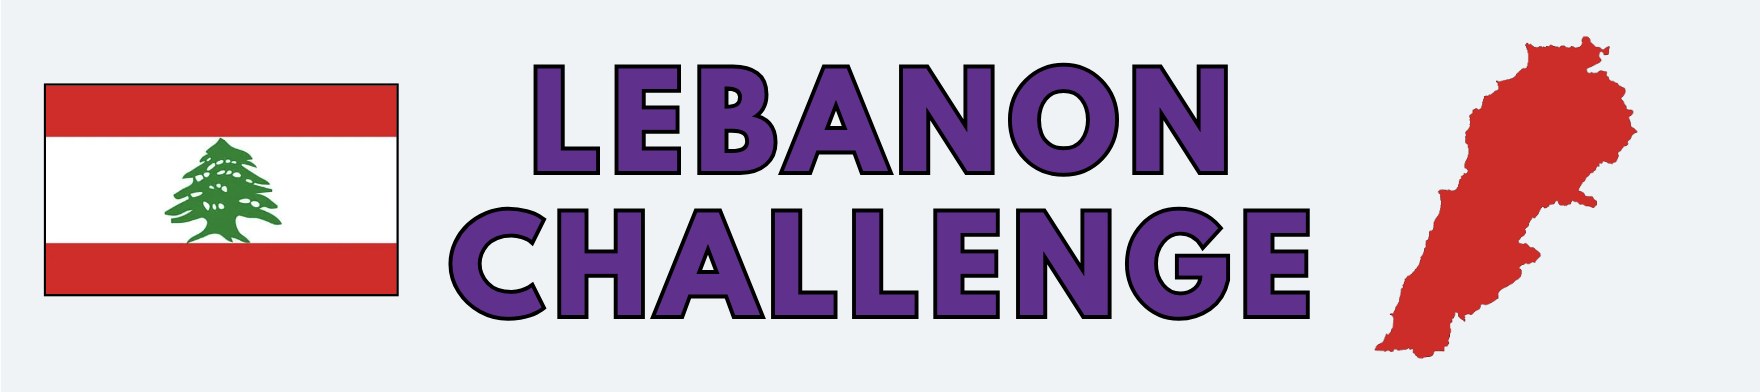 lebanon-challenge